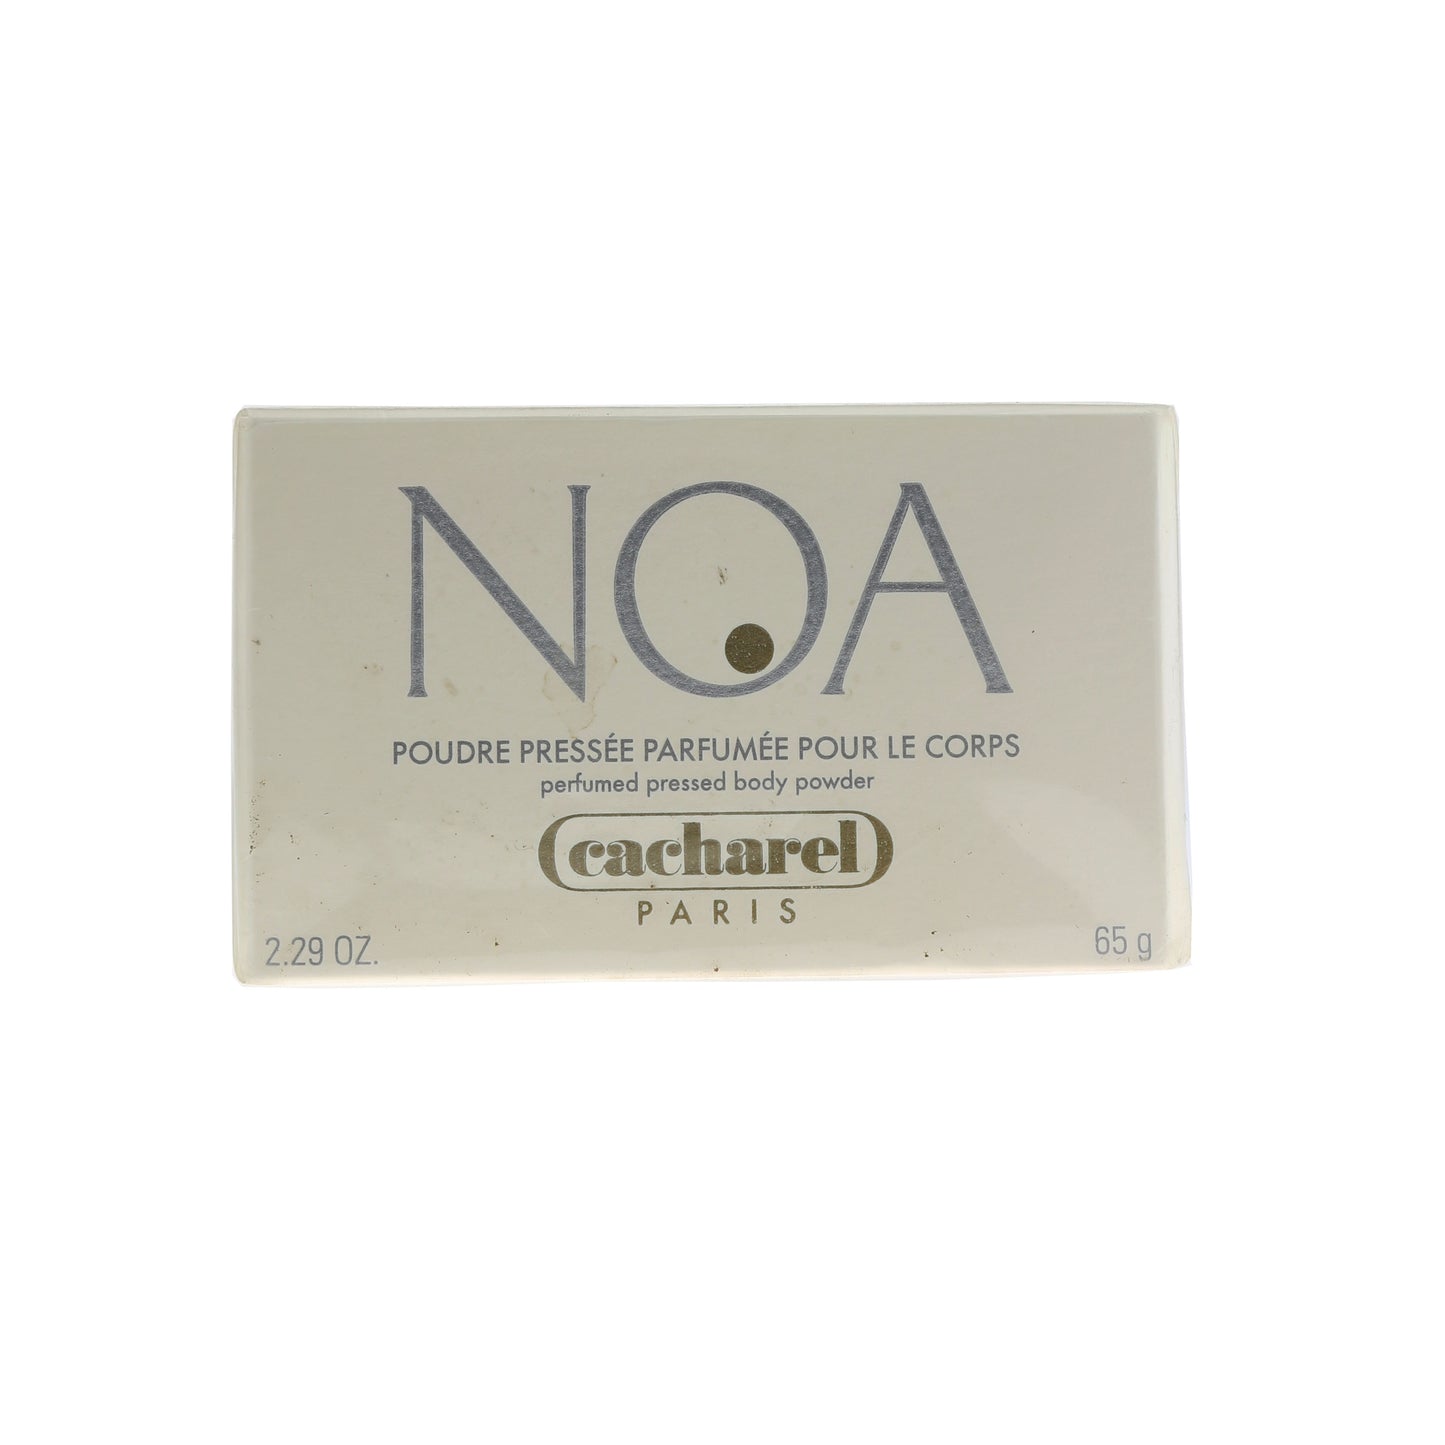 Noa Perfumed Pressed Body Powder 2.29 Oz